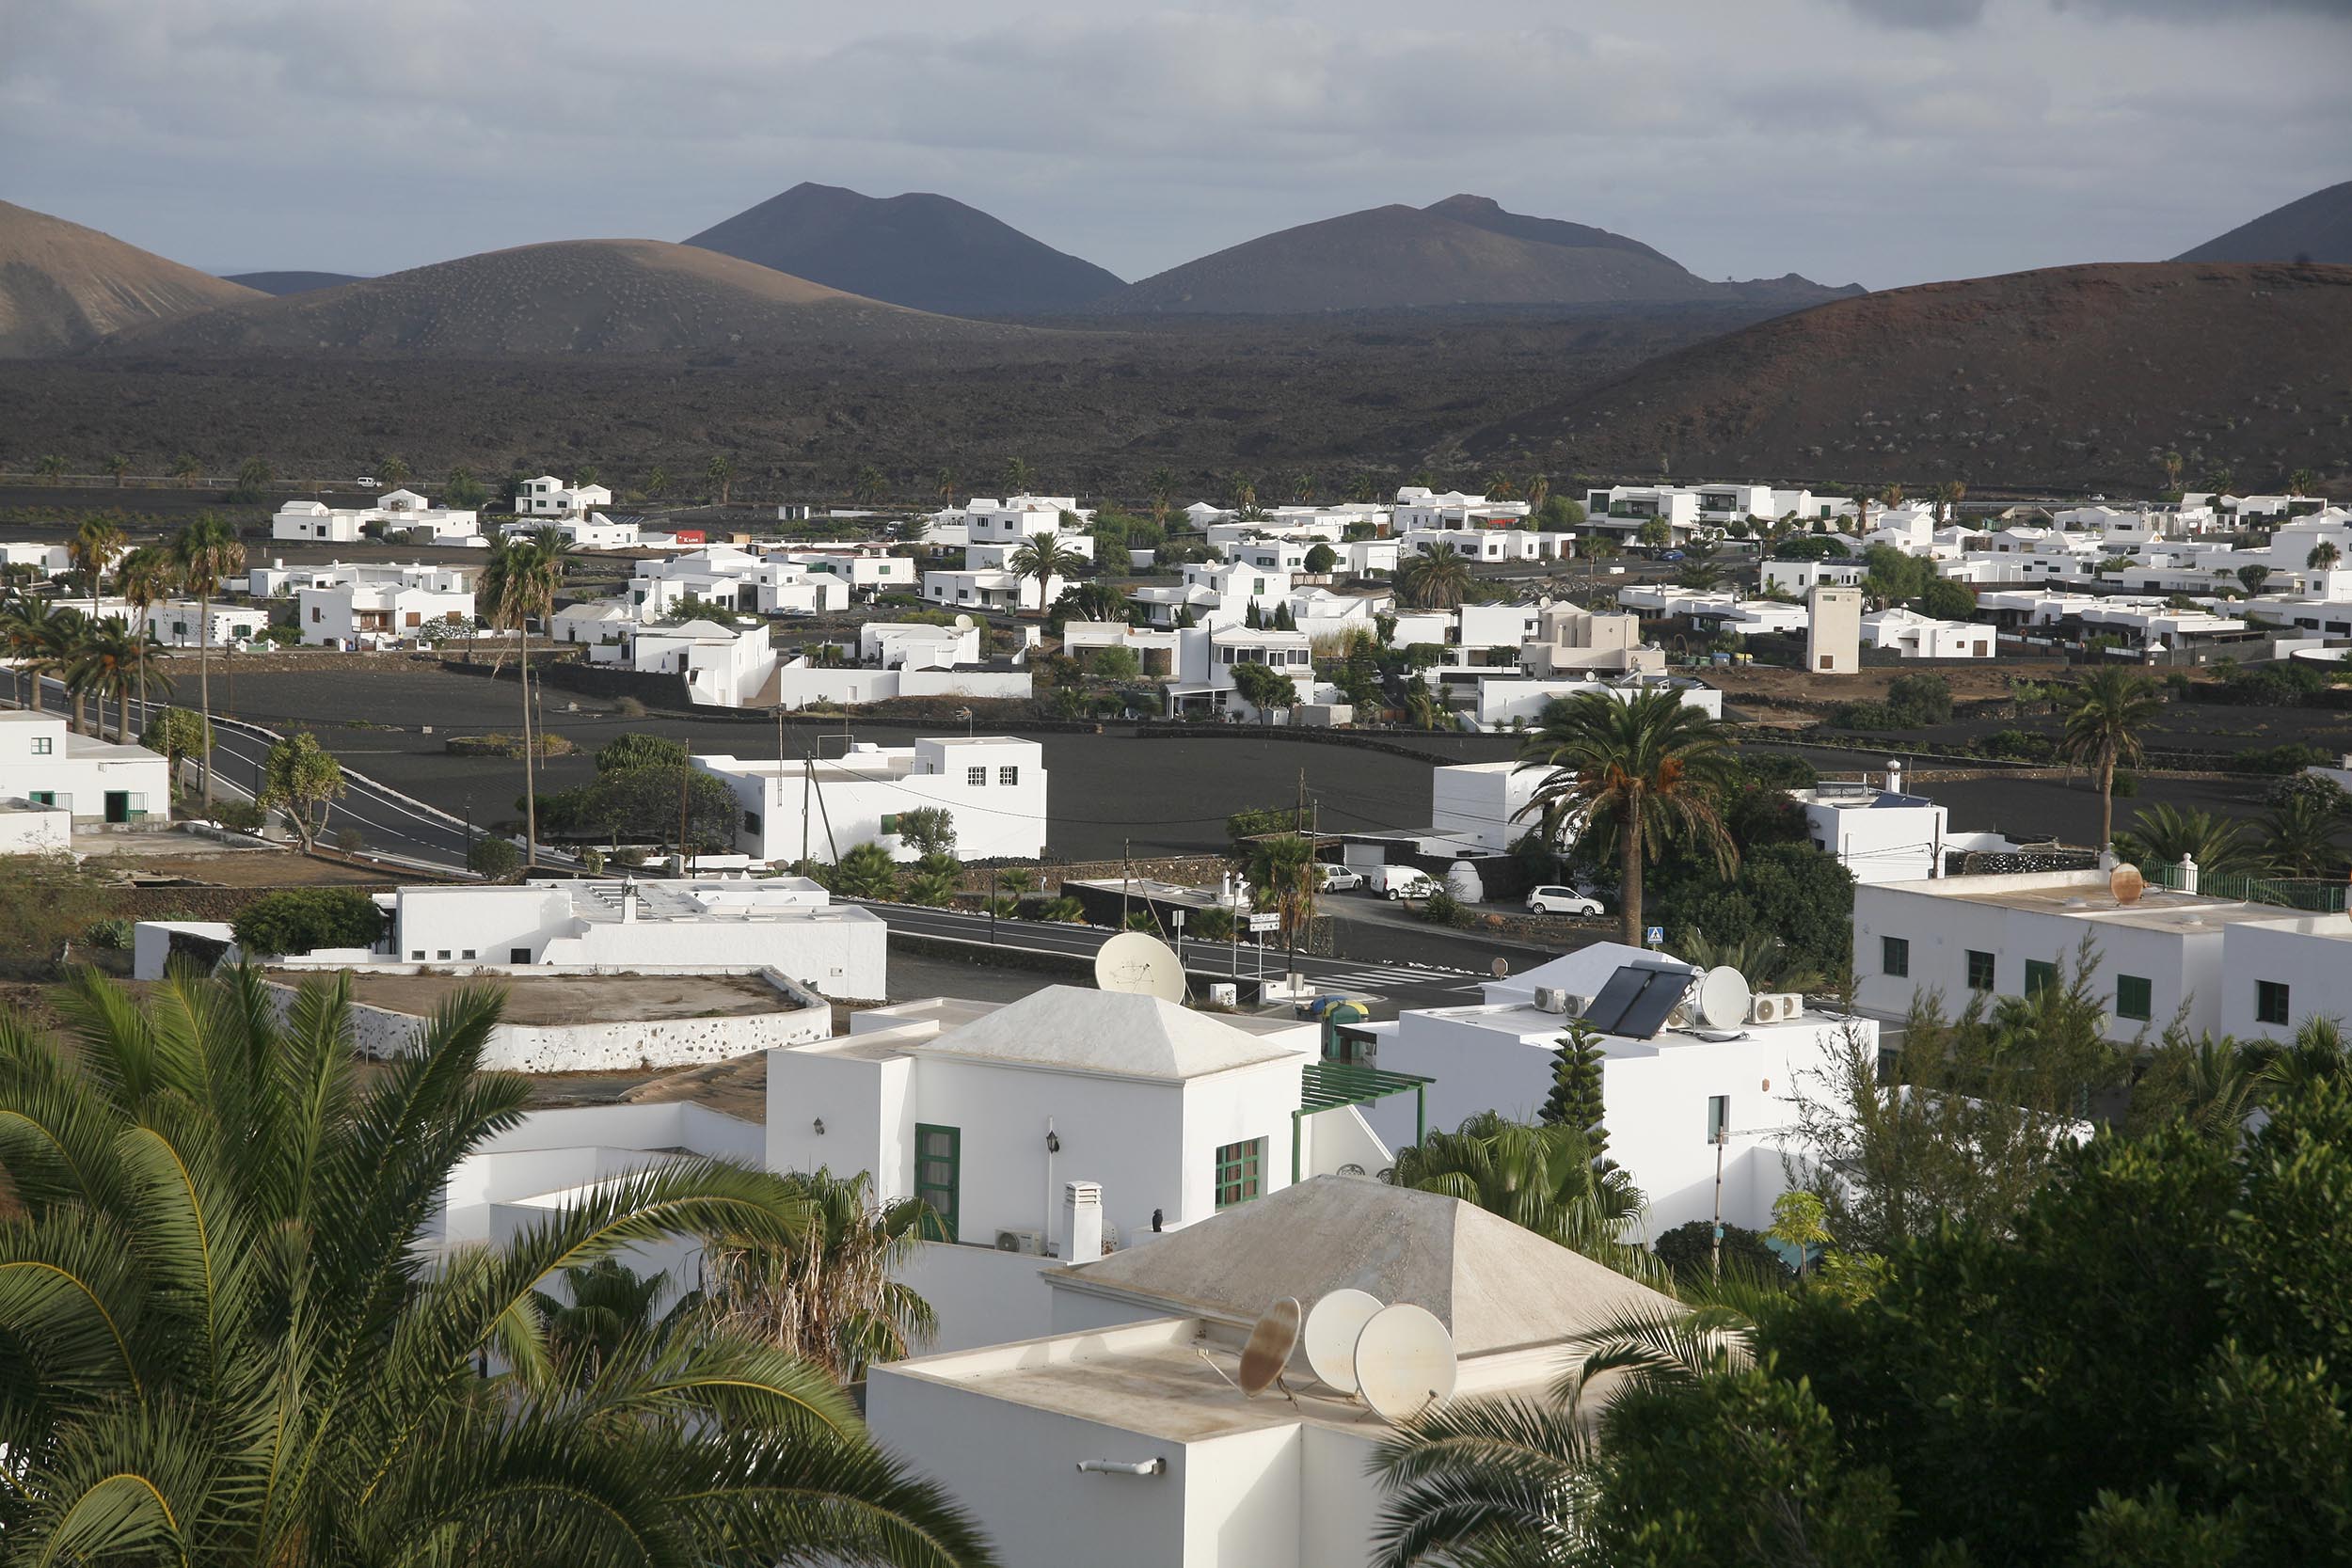 El alquiler en Canarias sigue subiendo. Foto: José Luis Carrasco.